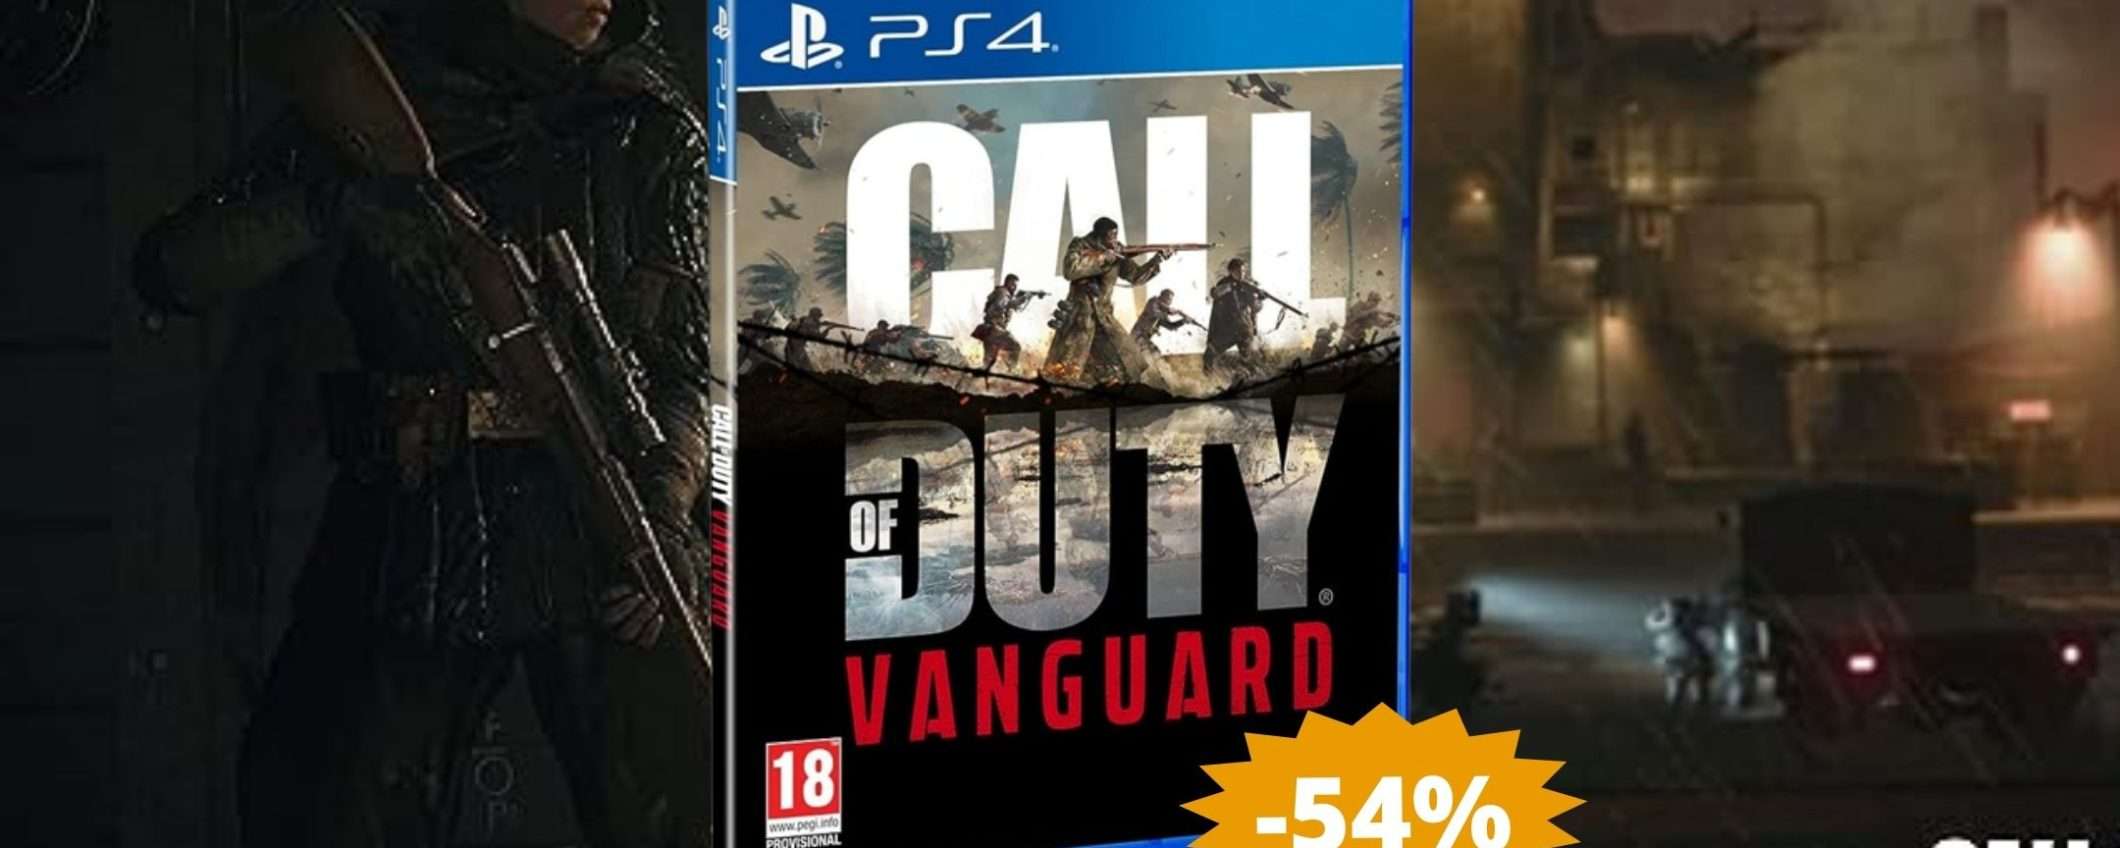 Call of Duty Vanguard PS4: sconto FOLLE del 54% su Amazon